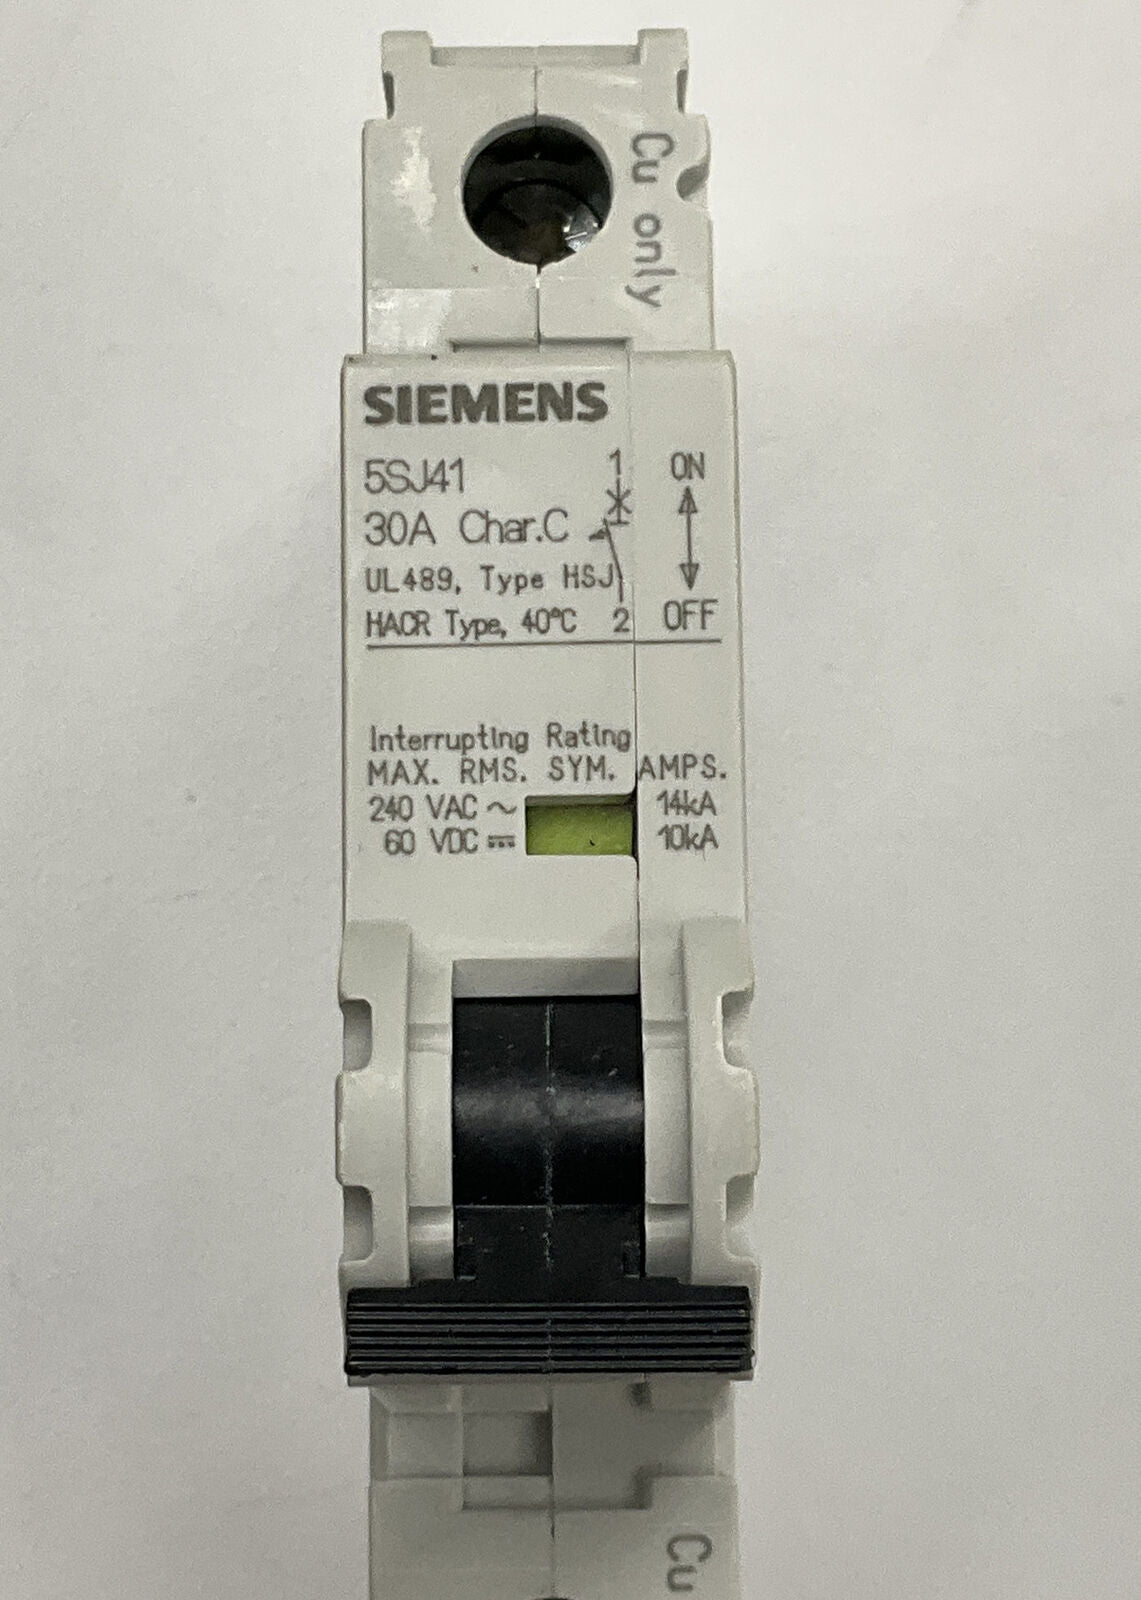 Siemens New 5SJ4130-7HG40 30 Amp Type HSJ Circuit Breaker DIN Mount (CL322) - 0